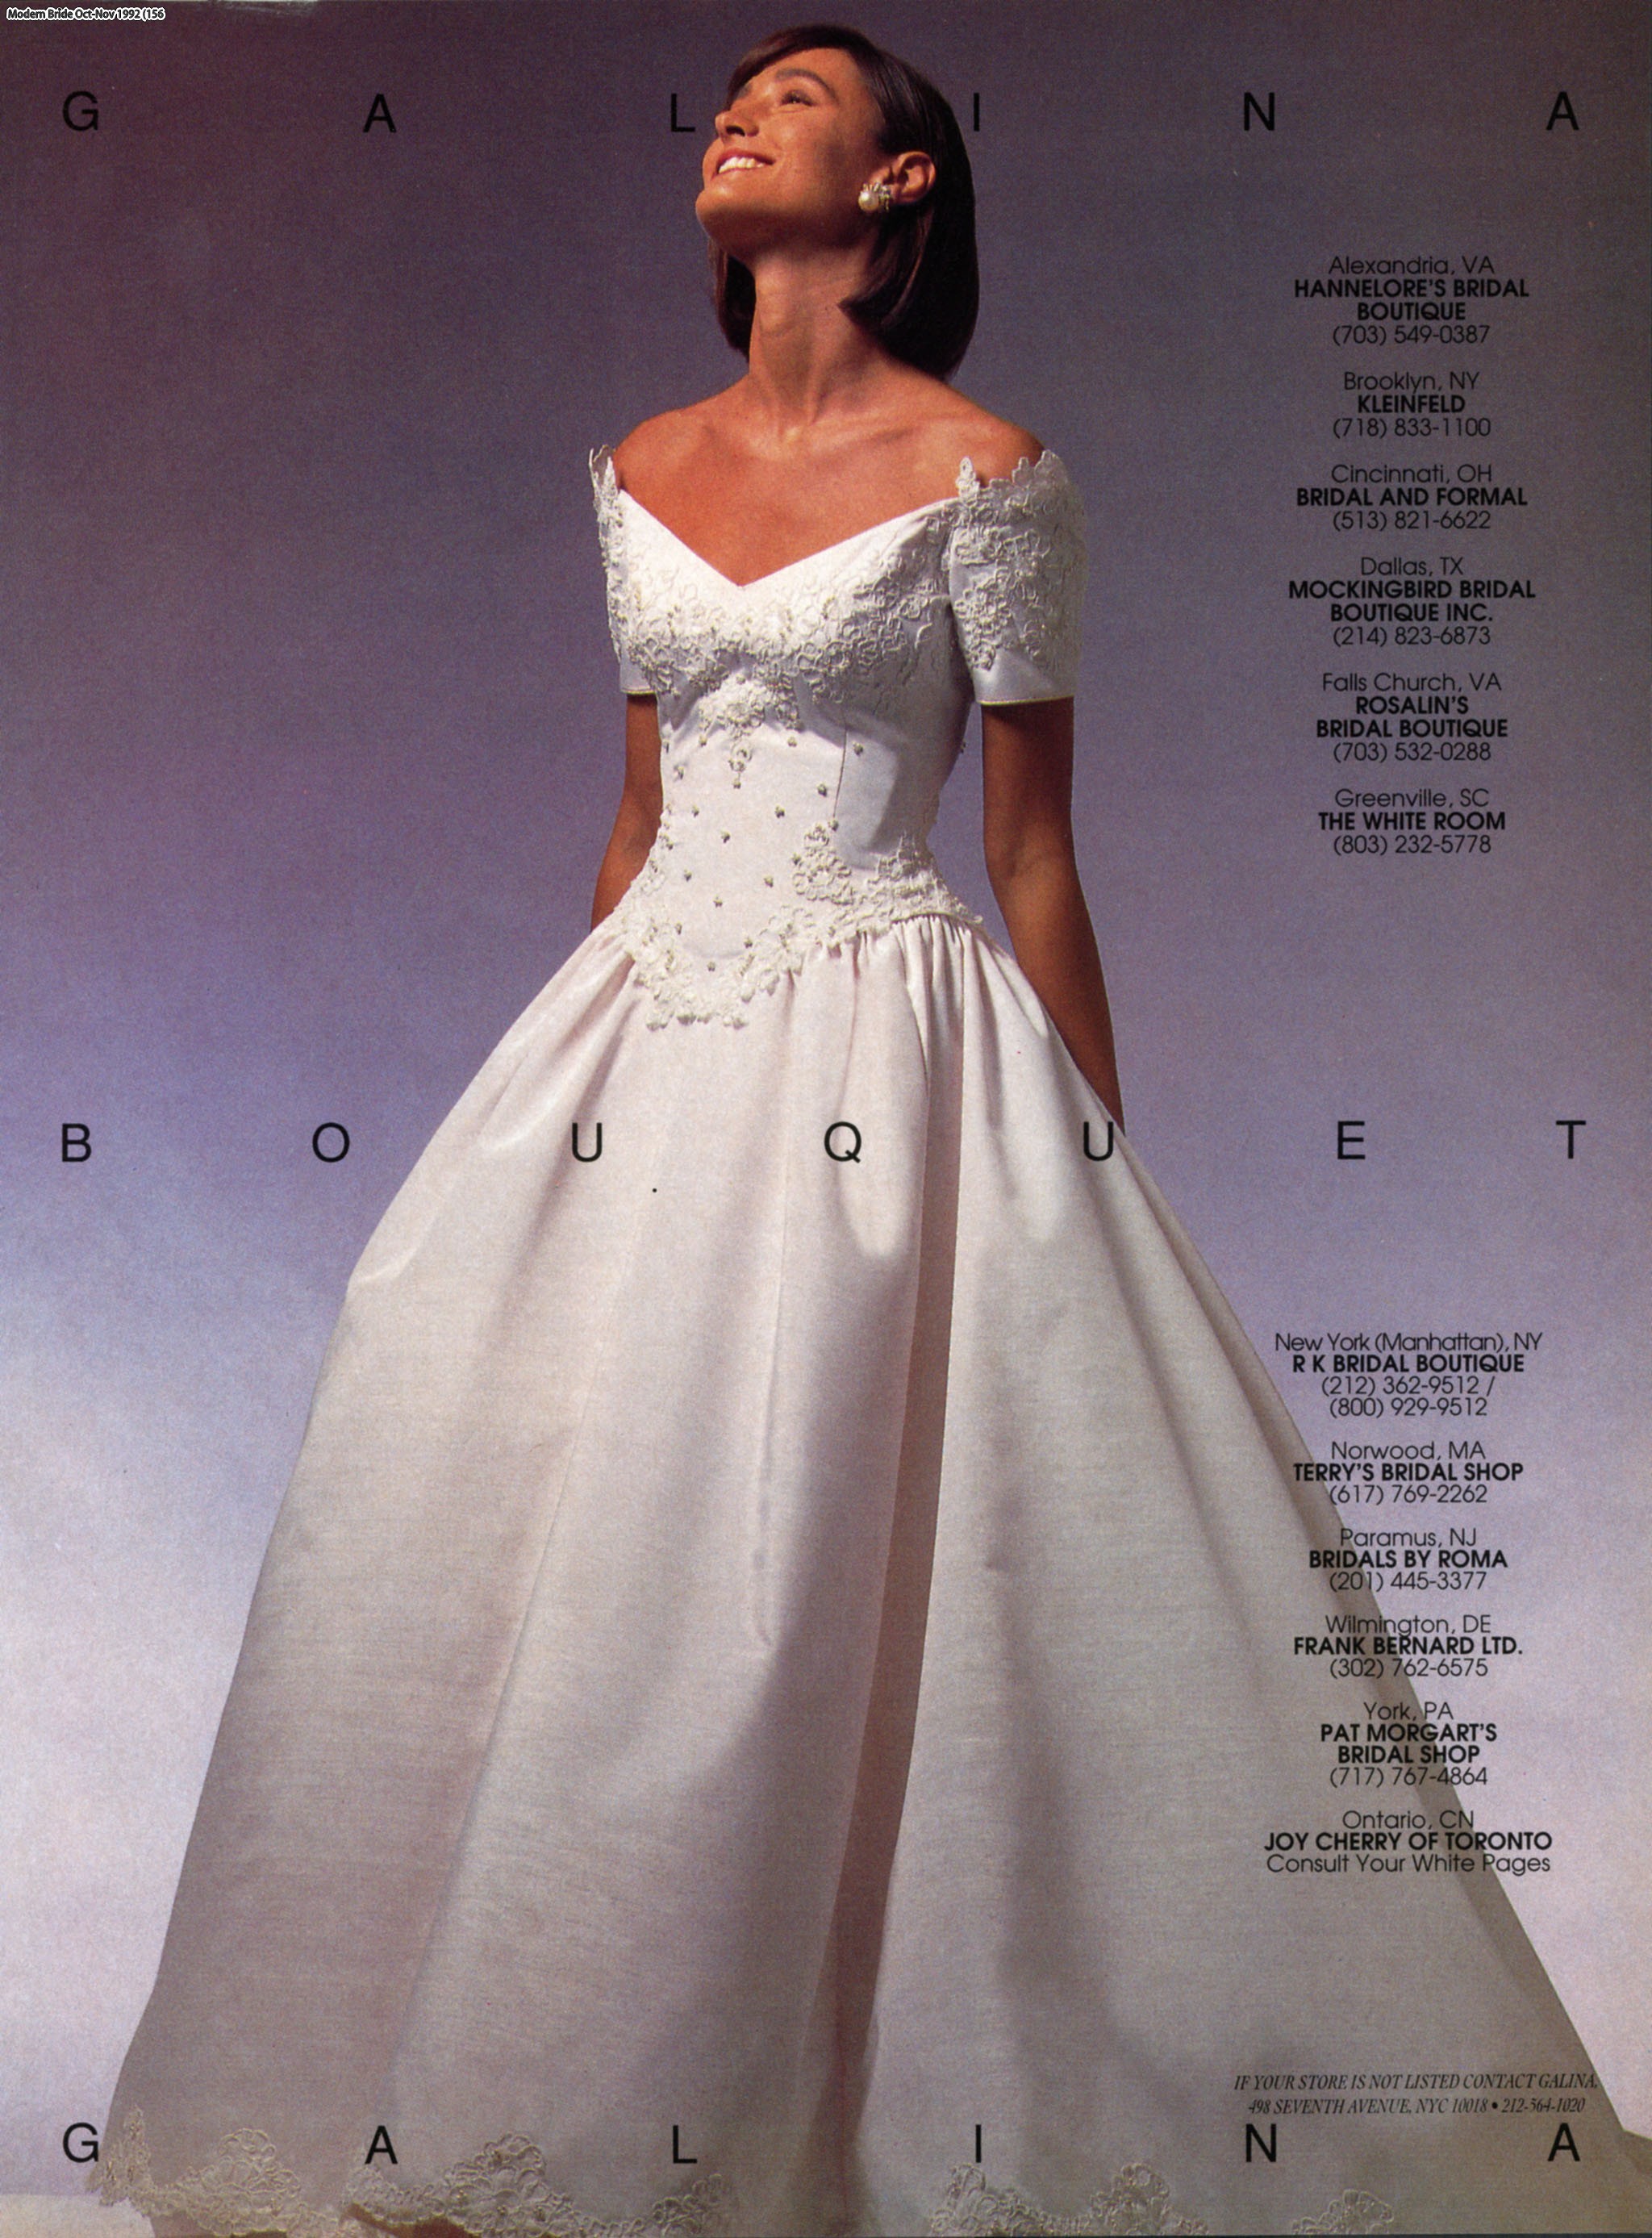 VintageBridalScans on Tumblr: Modern Bride Oct-Nov 1992 (6 of 7 posts ...